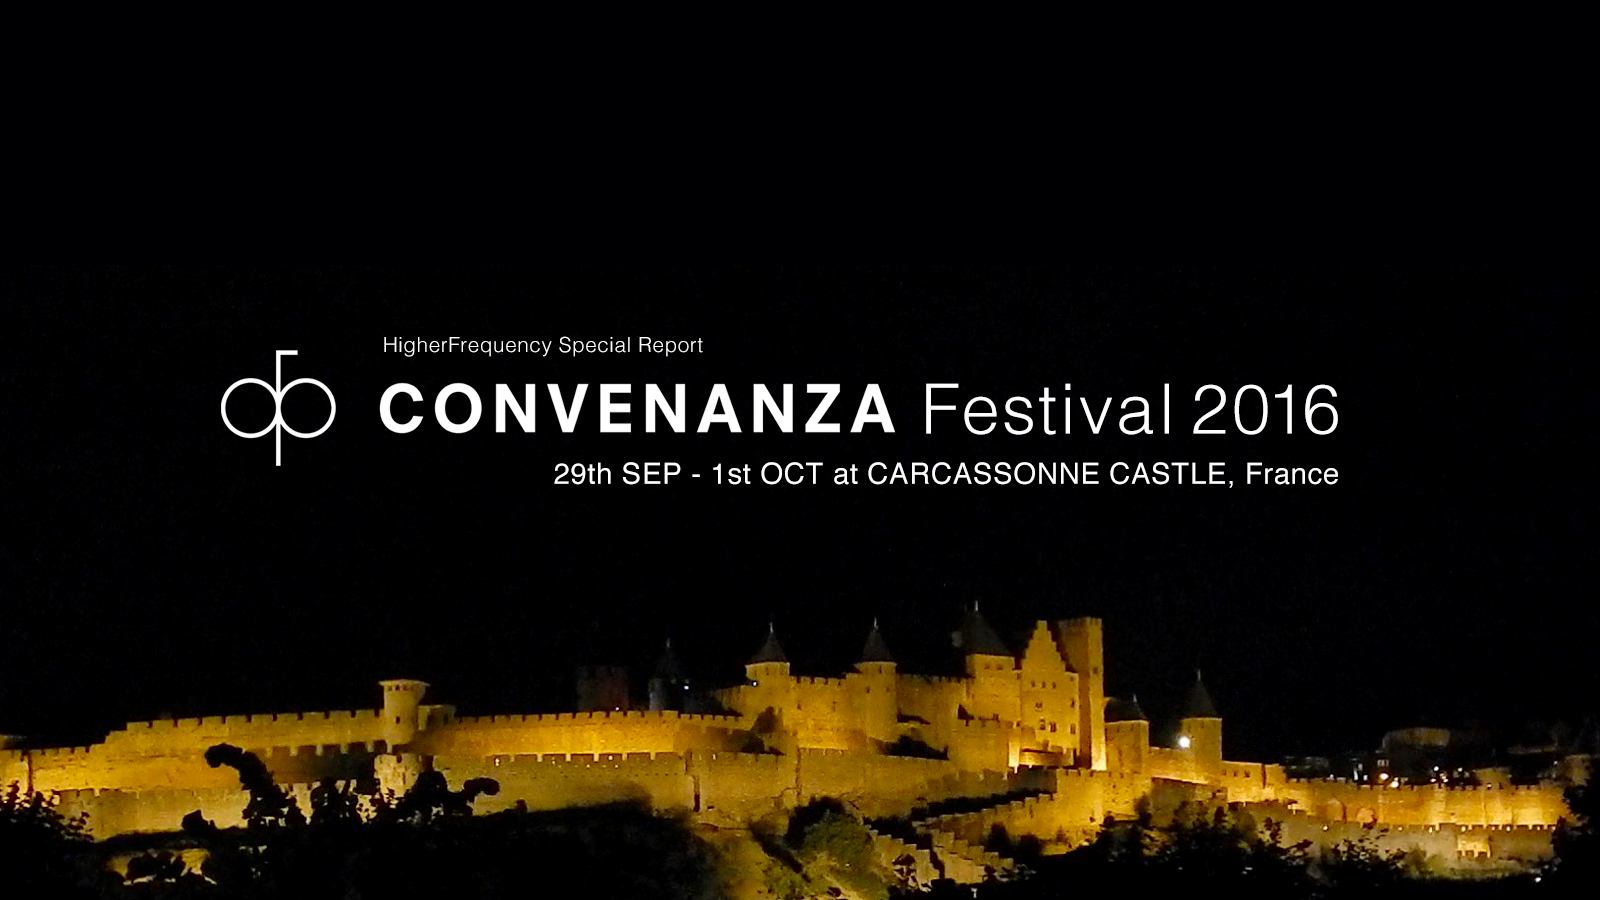 Convenanza Festival 2016